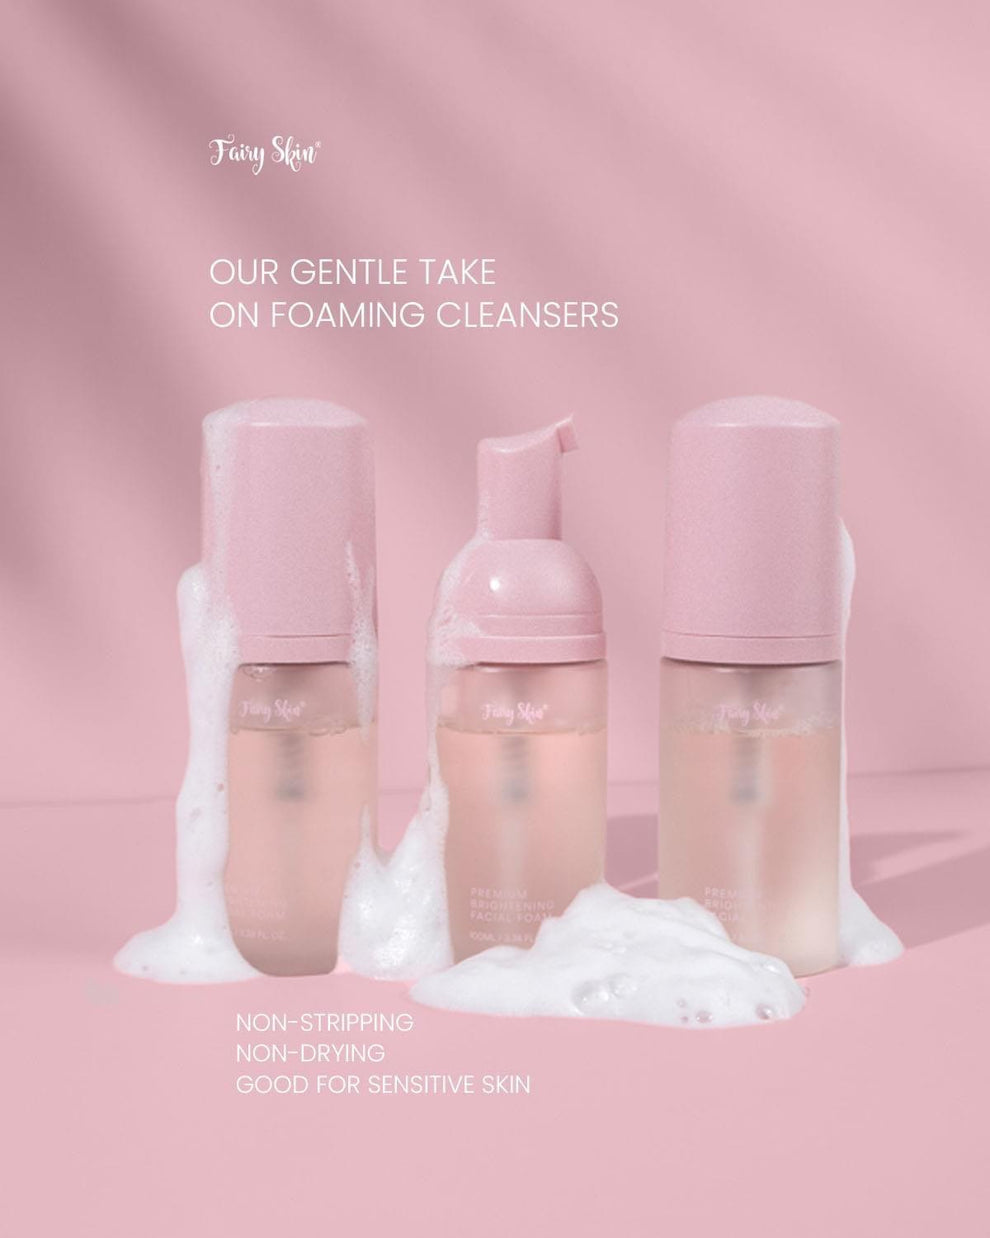 Fairy Skin Premium Brightening Facial Foam